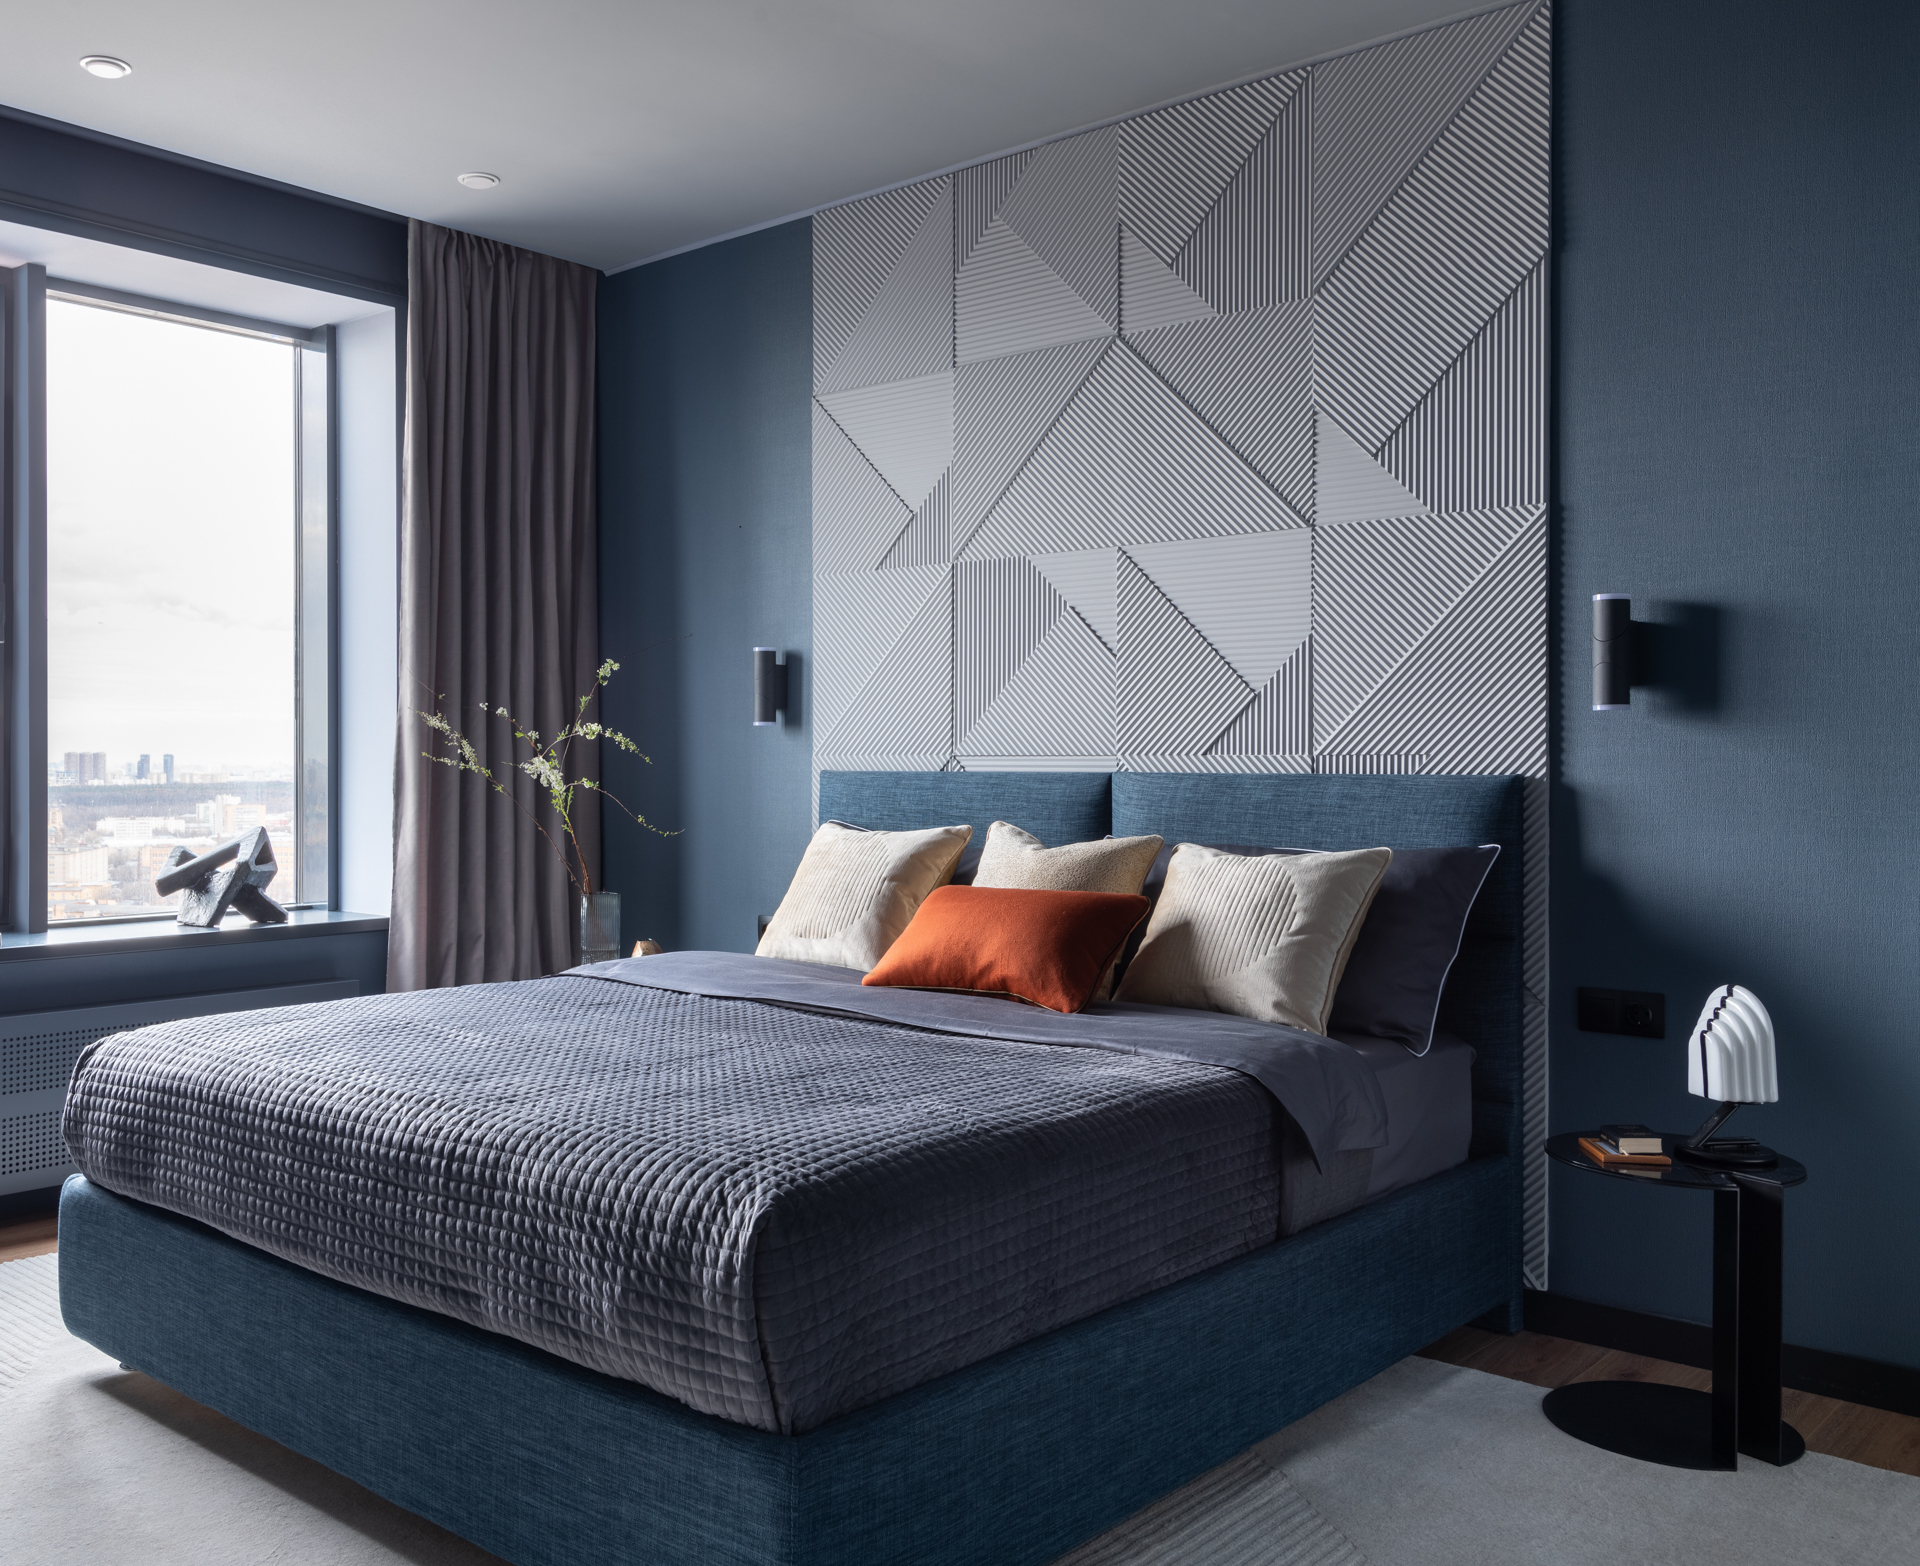 Phòng ngủ của cặp đôi được bày trí tinh tế với rất ít màu sắc, chỉ sử dụng tone xanh lam và xám chủ đạo như phong cách thiết kế tổng thể. Một chiếc gối màu cam gạch được xem là tone màu nóng duy nhất trong căn phòng. 